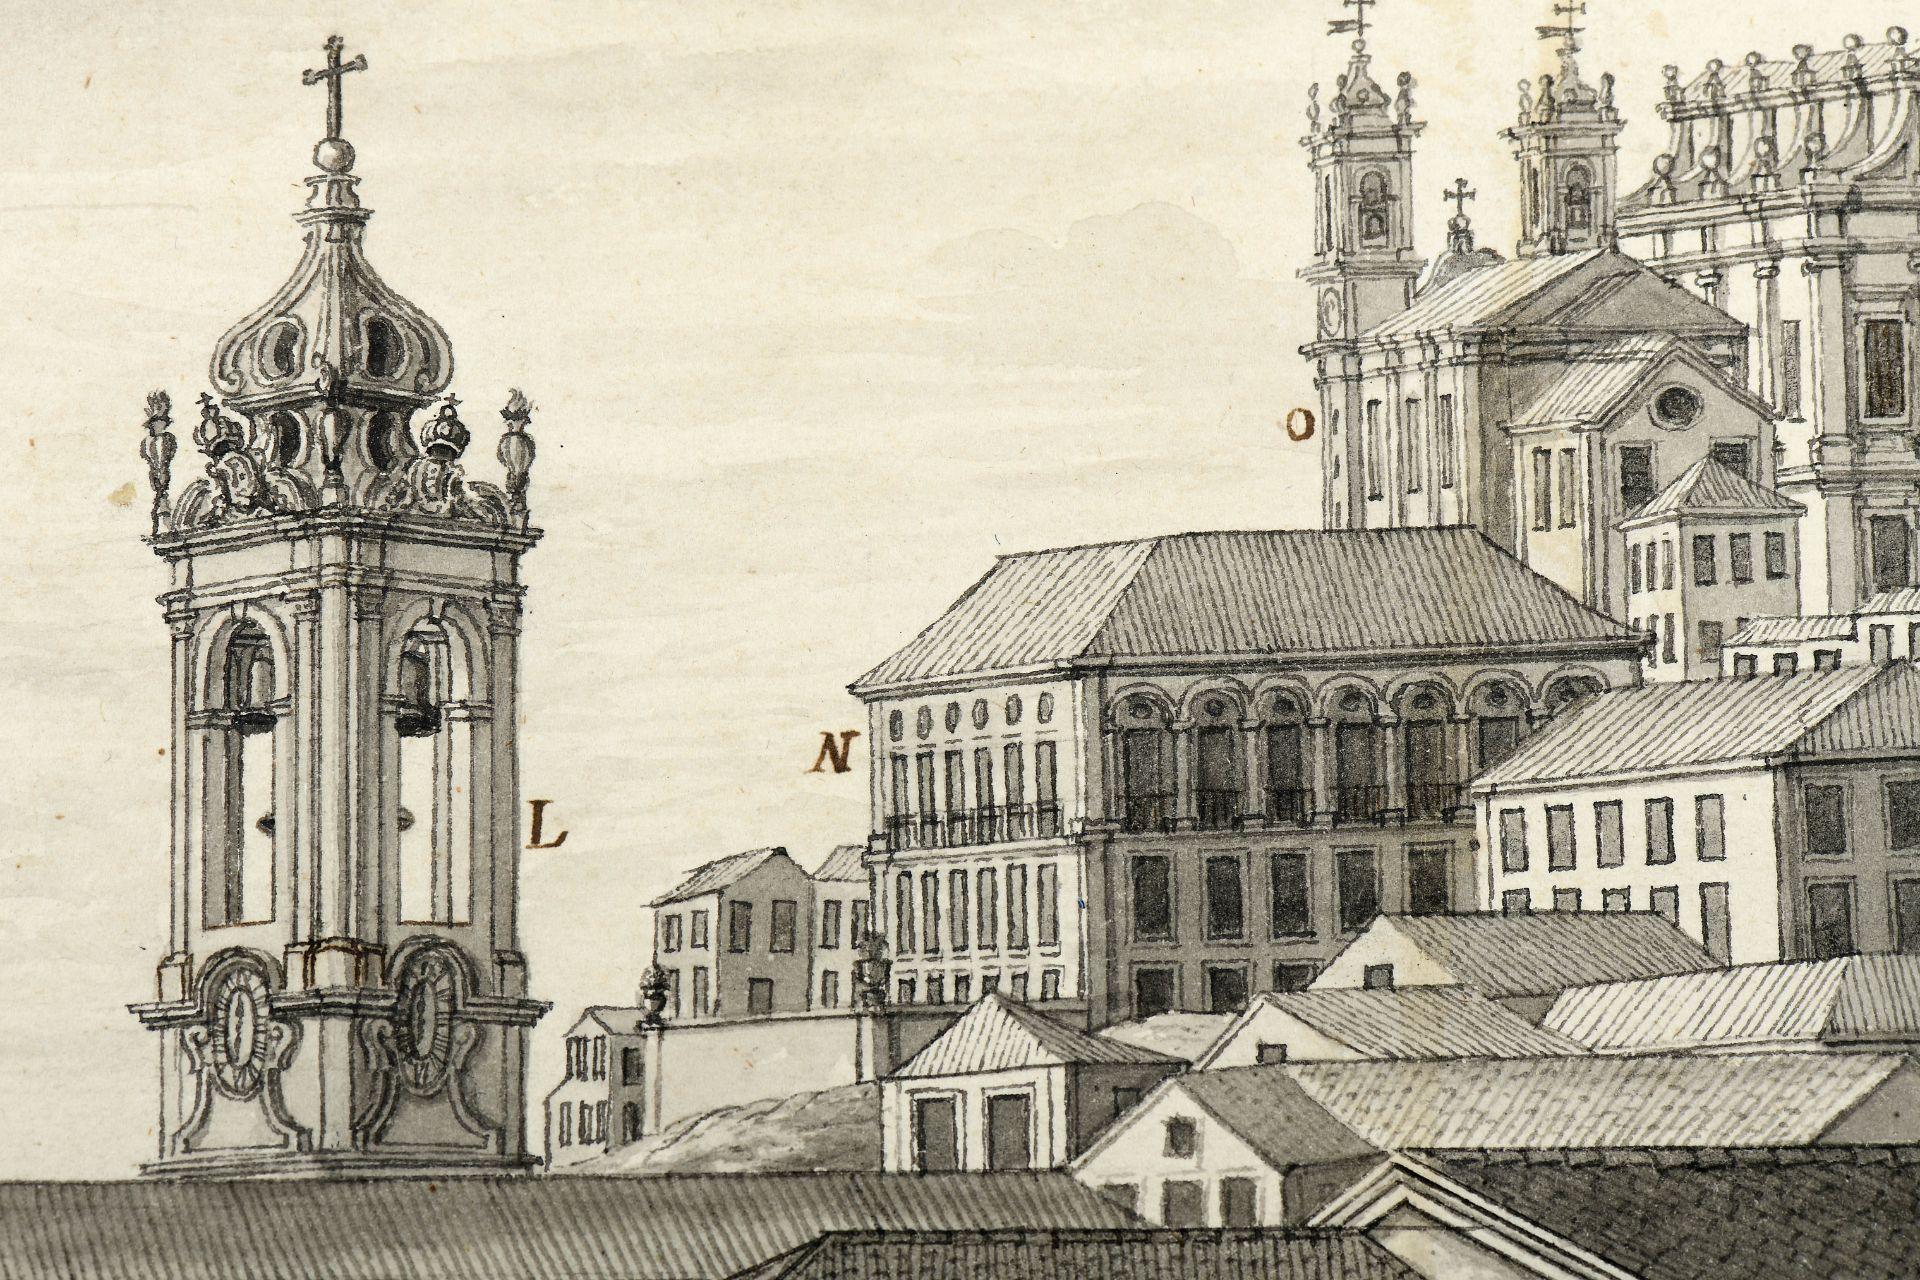 ZUZARTE - atc. 1787 - Bild 12 aus 20